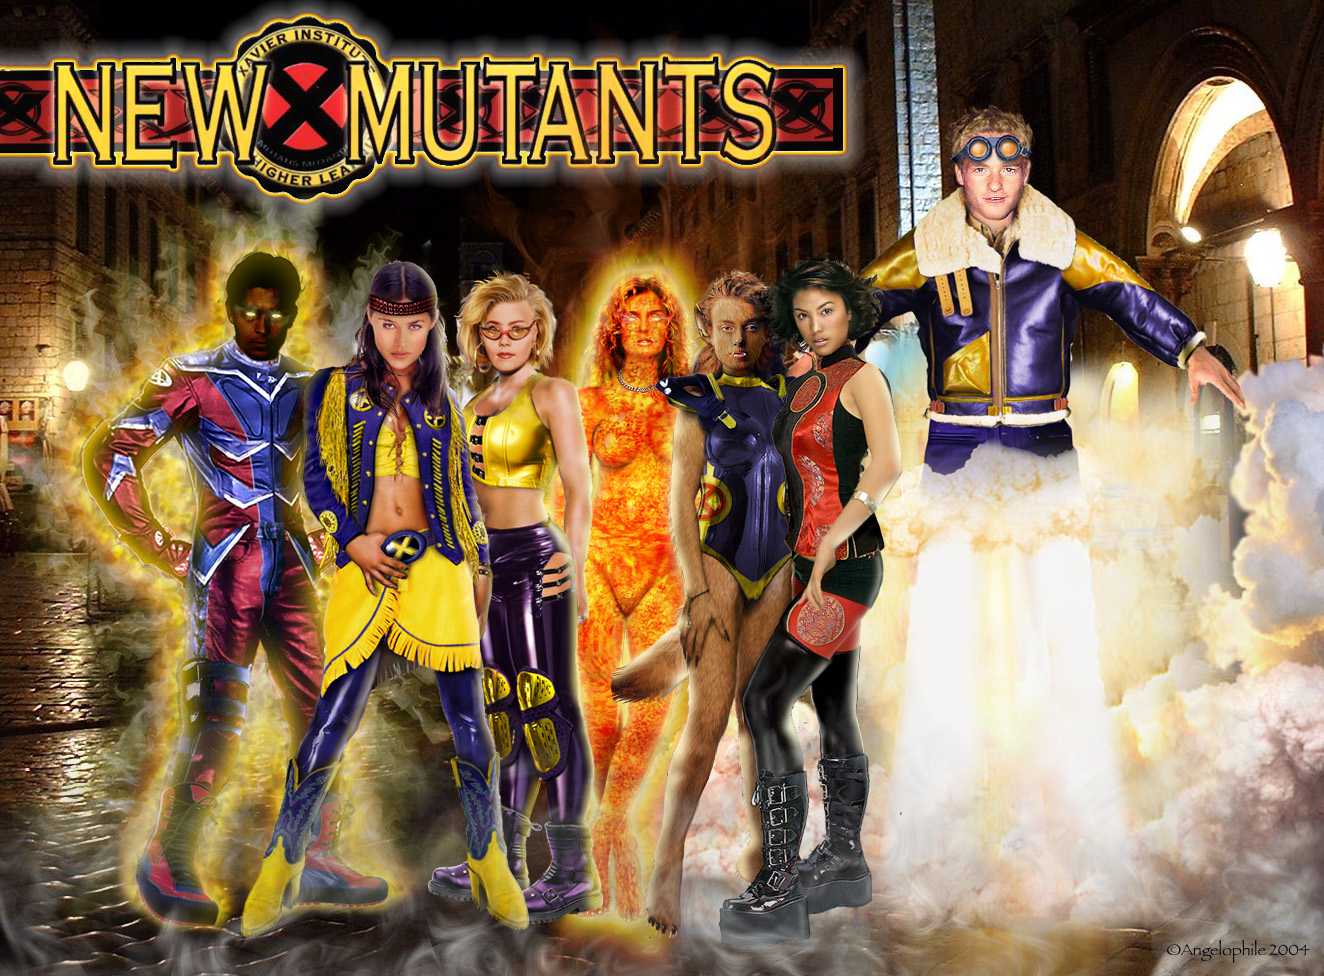 "Class Reunion" - The New Mutants